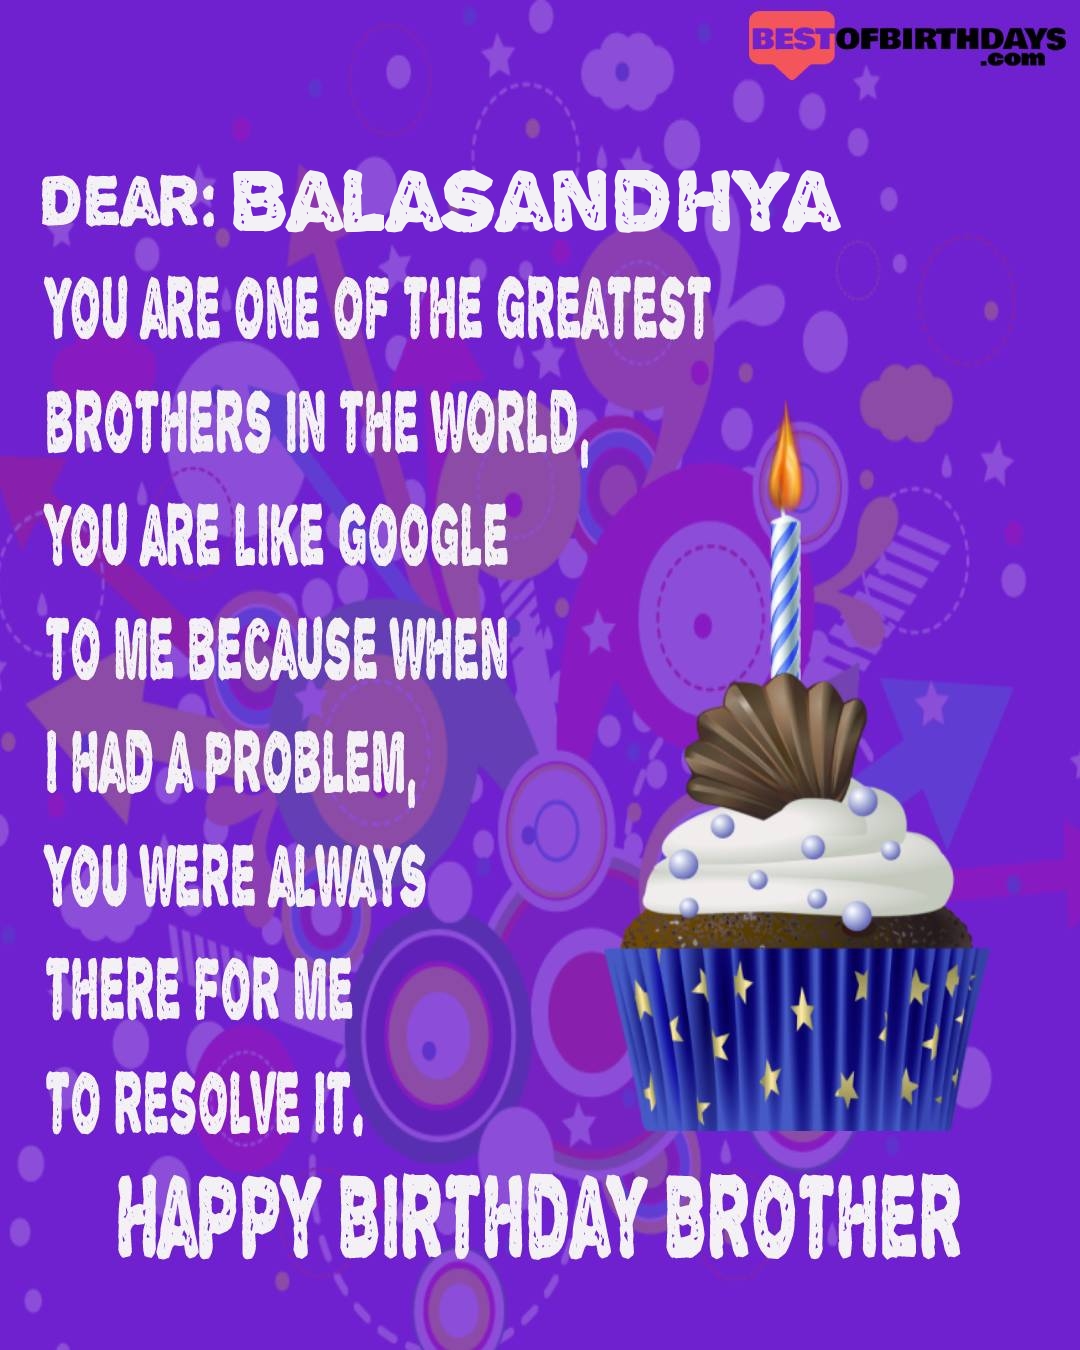 Happy birthday balasandhya bhai brother bro